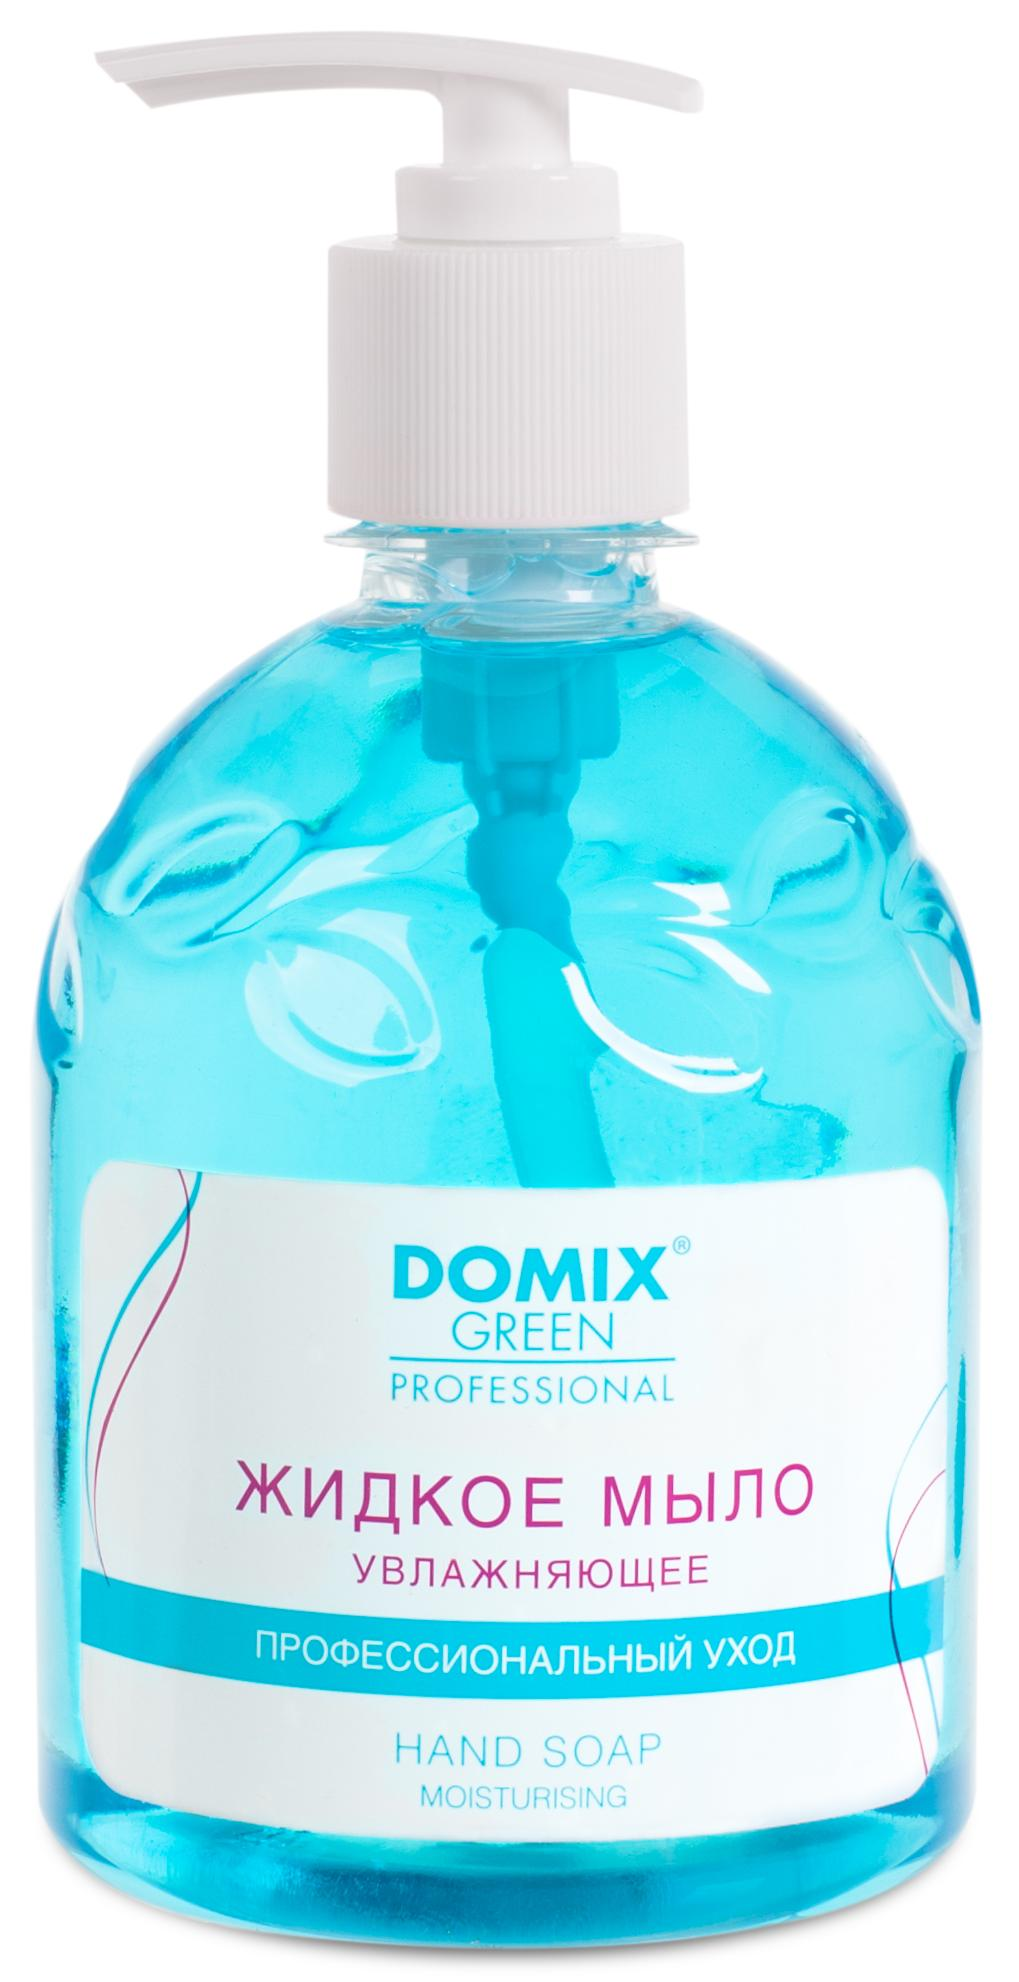 DOMIX Мыло жидкое увлажняющее для профессионального ухода / DGP 500 мл